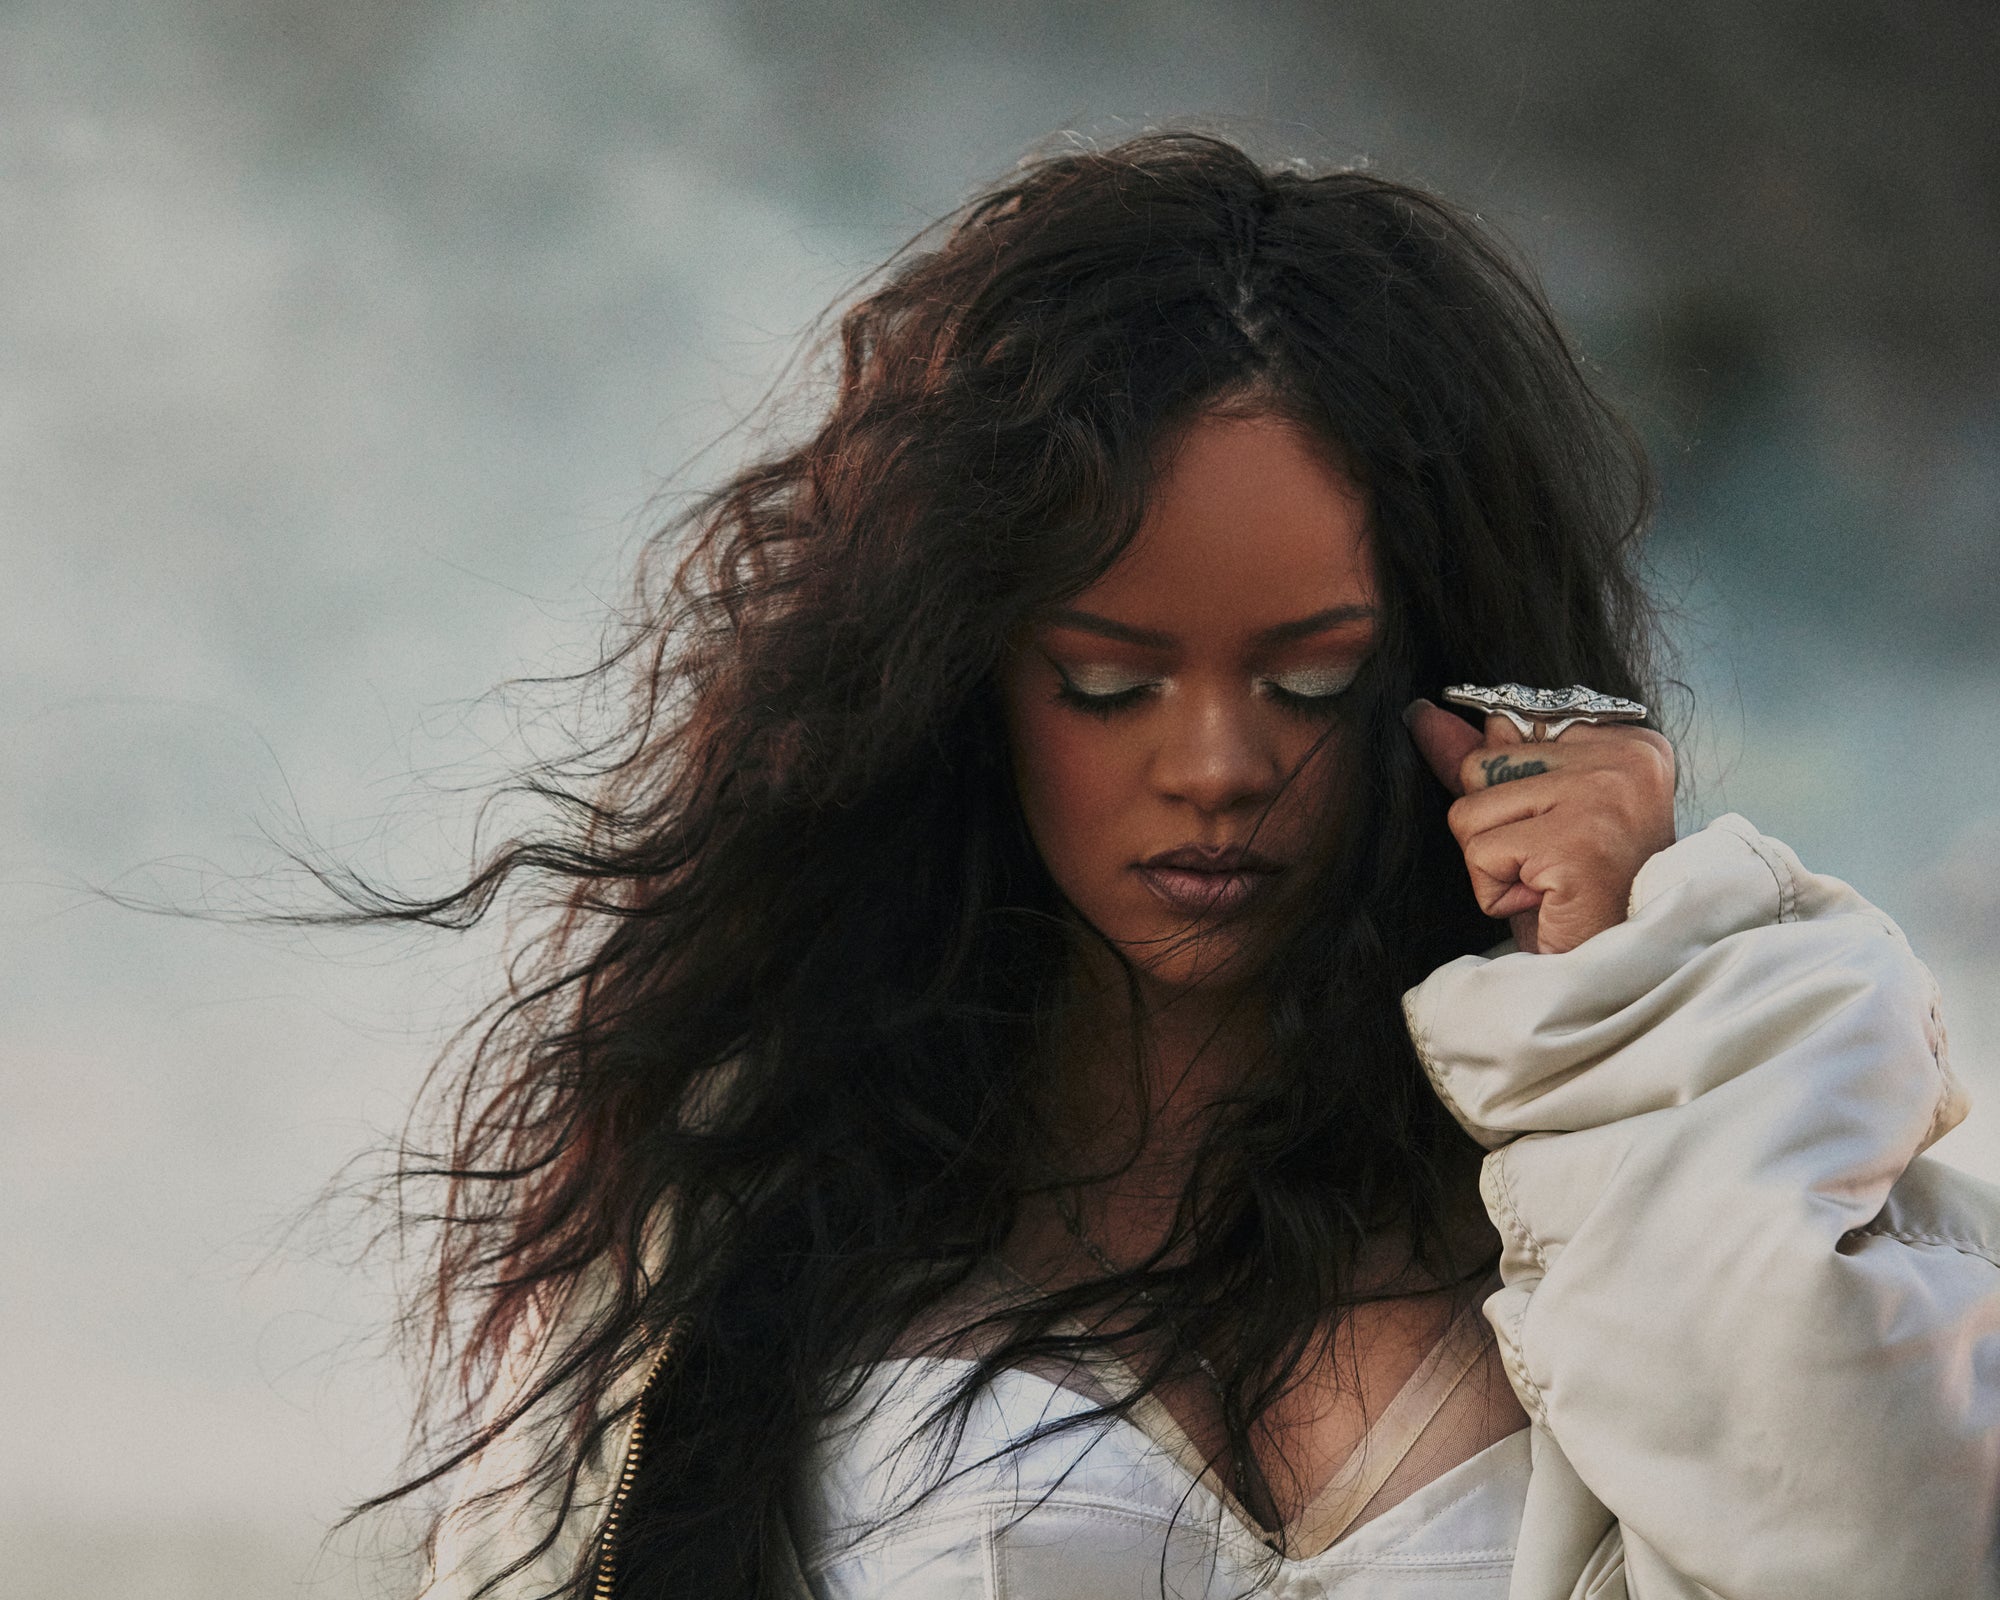 Rihanna all'anagrafe Robyn Rihanna Fenty (Saint Michael, 20 febbraio 1988), è una cantante, attrice, modella, imprenditrice, filantropa e diplomatica barbadiana.